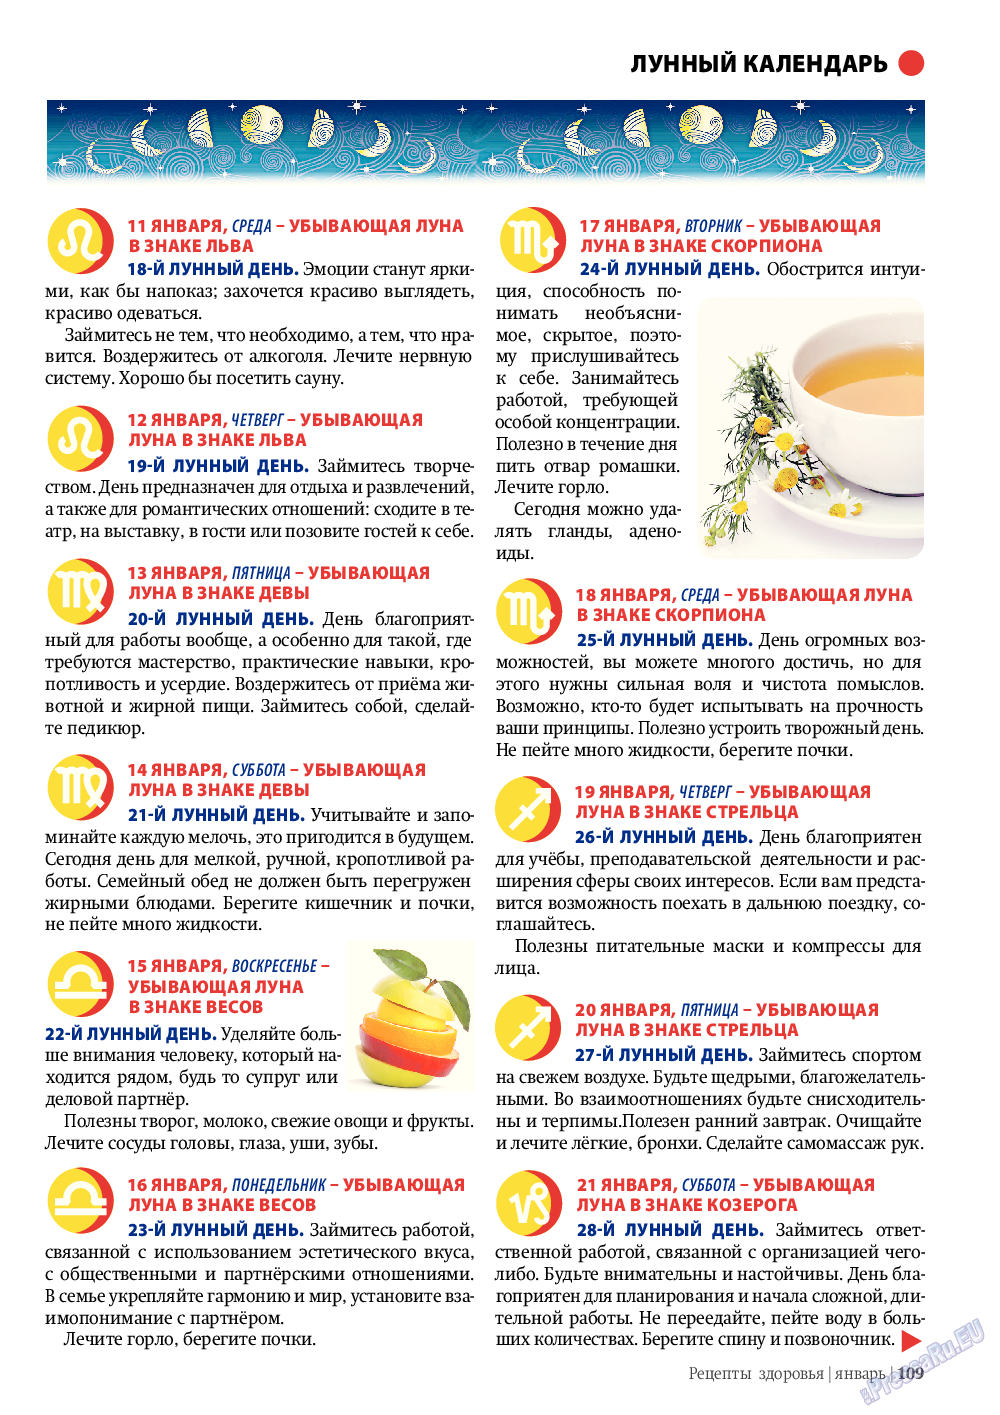 Рецепты здоровья, журнал. 2012 №1 стр.109